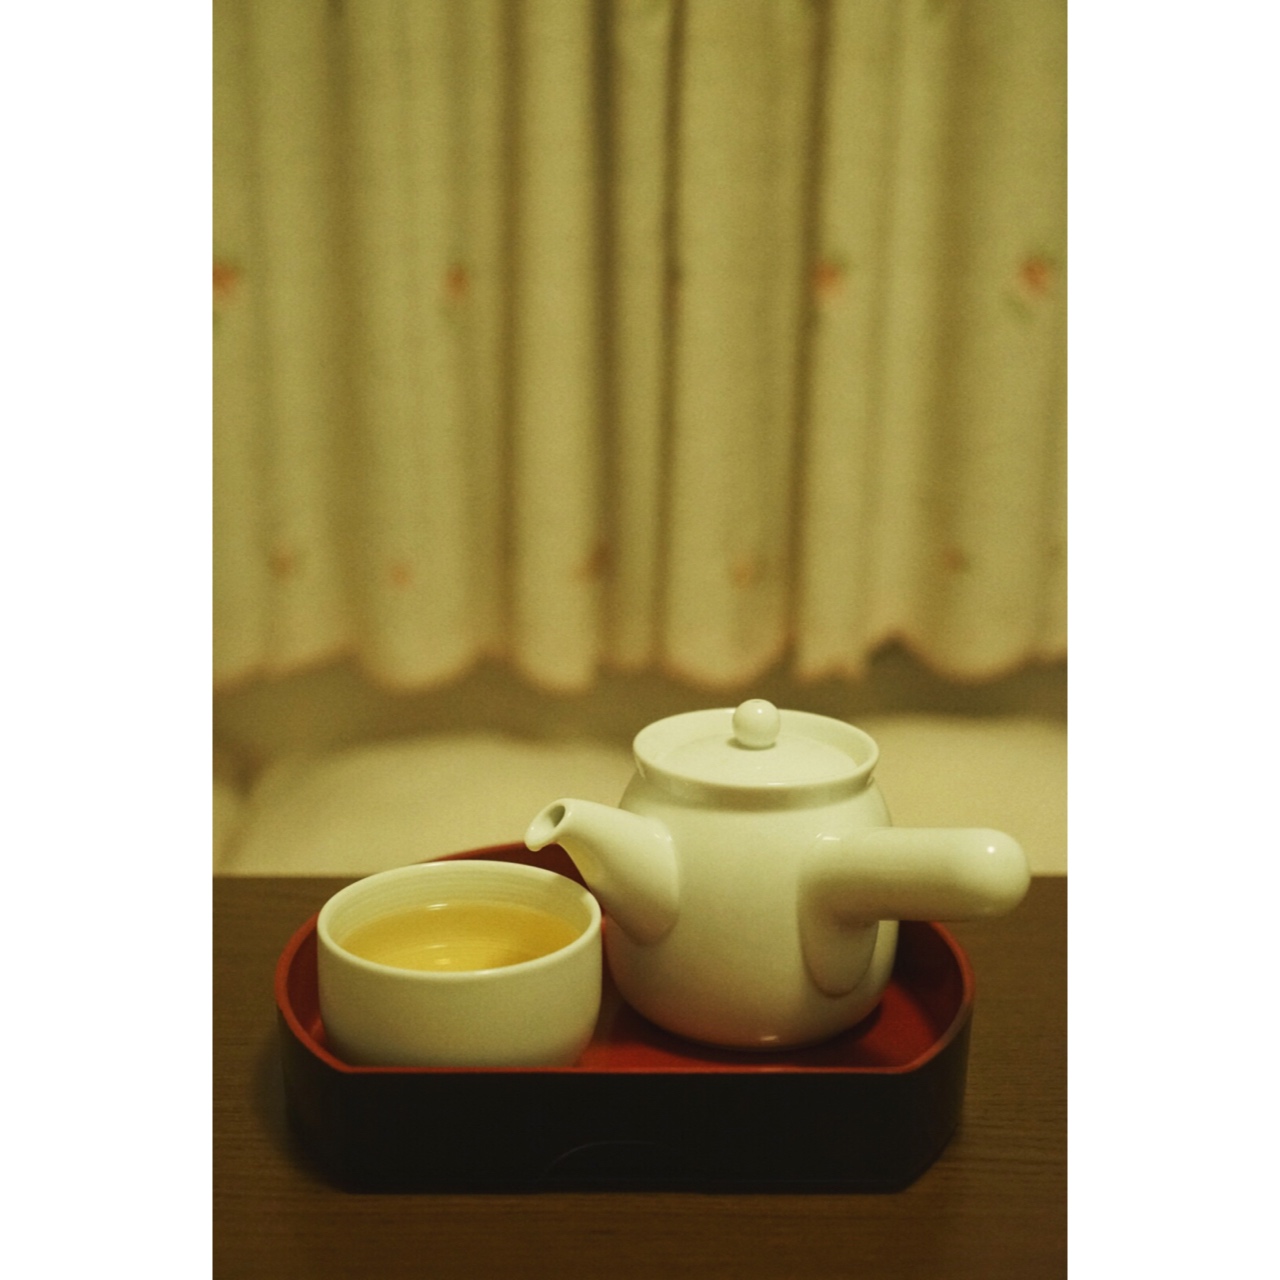 来喝茶吧。